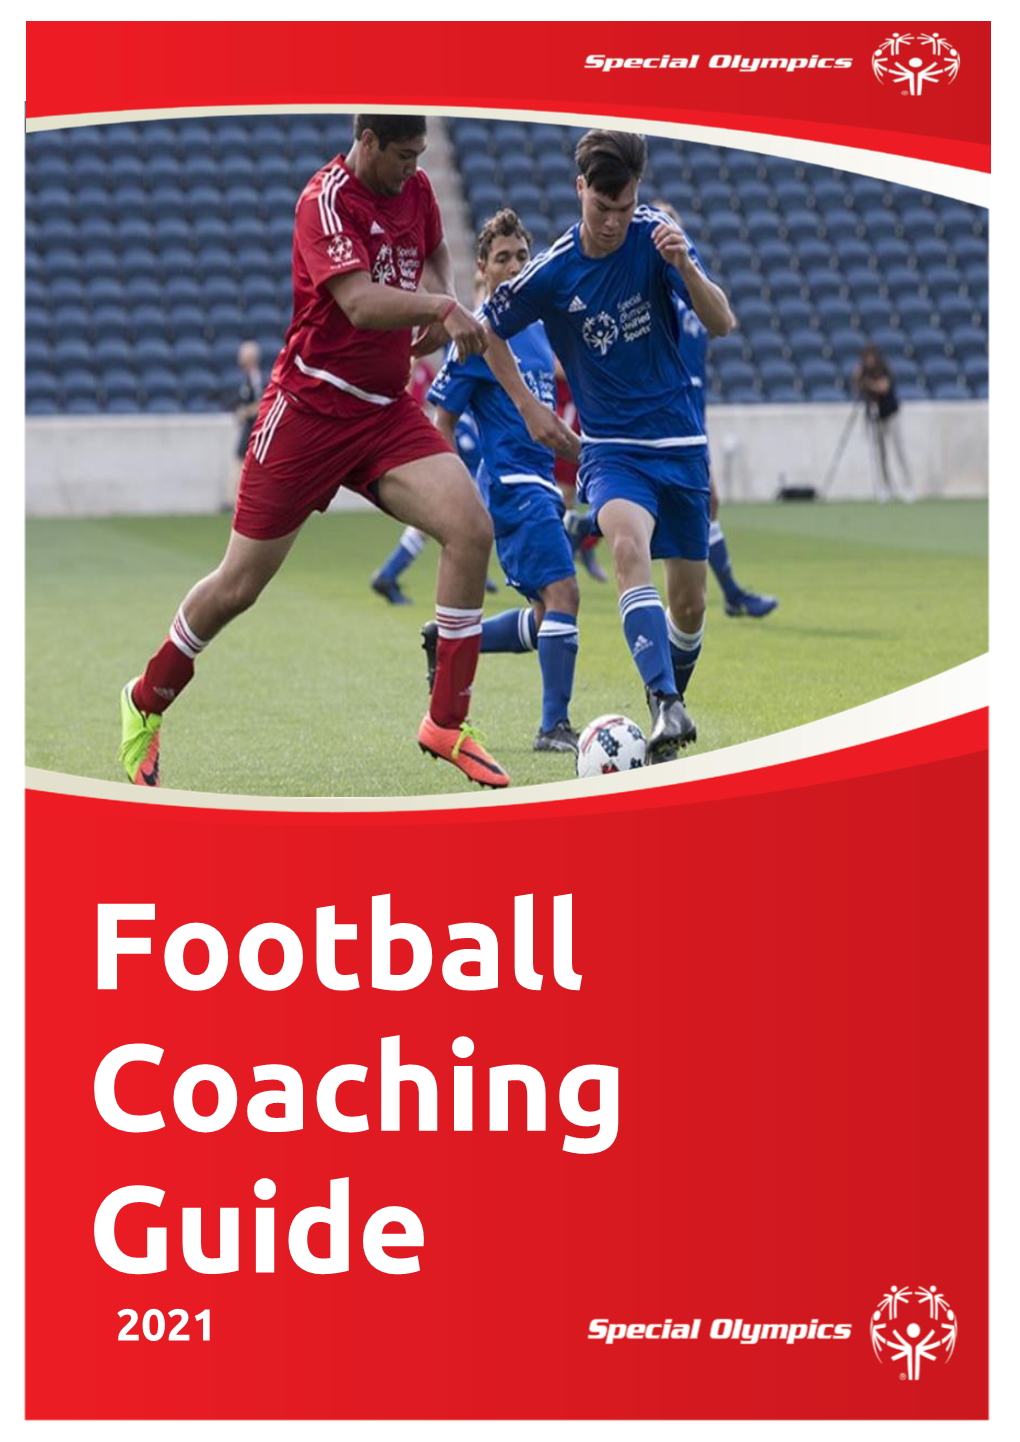 Football Coaching Guide 2021